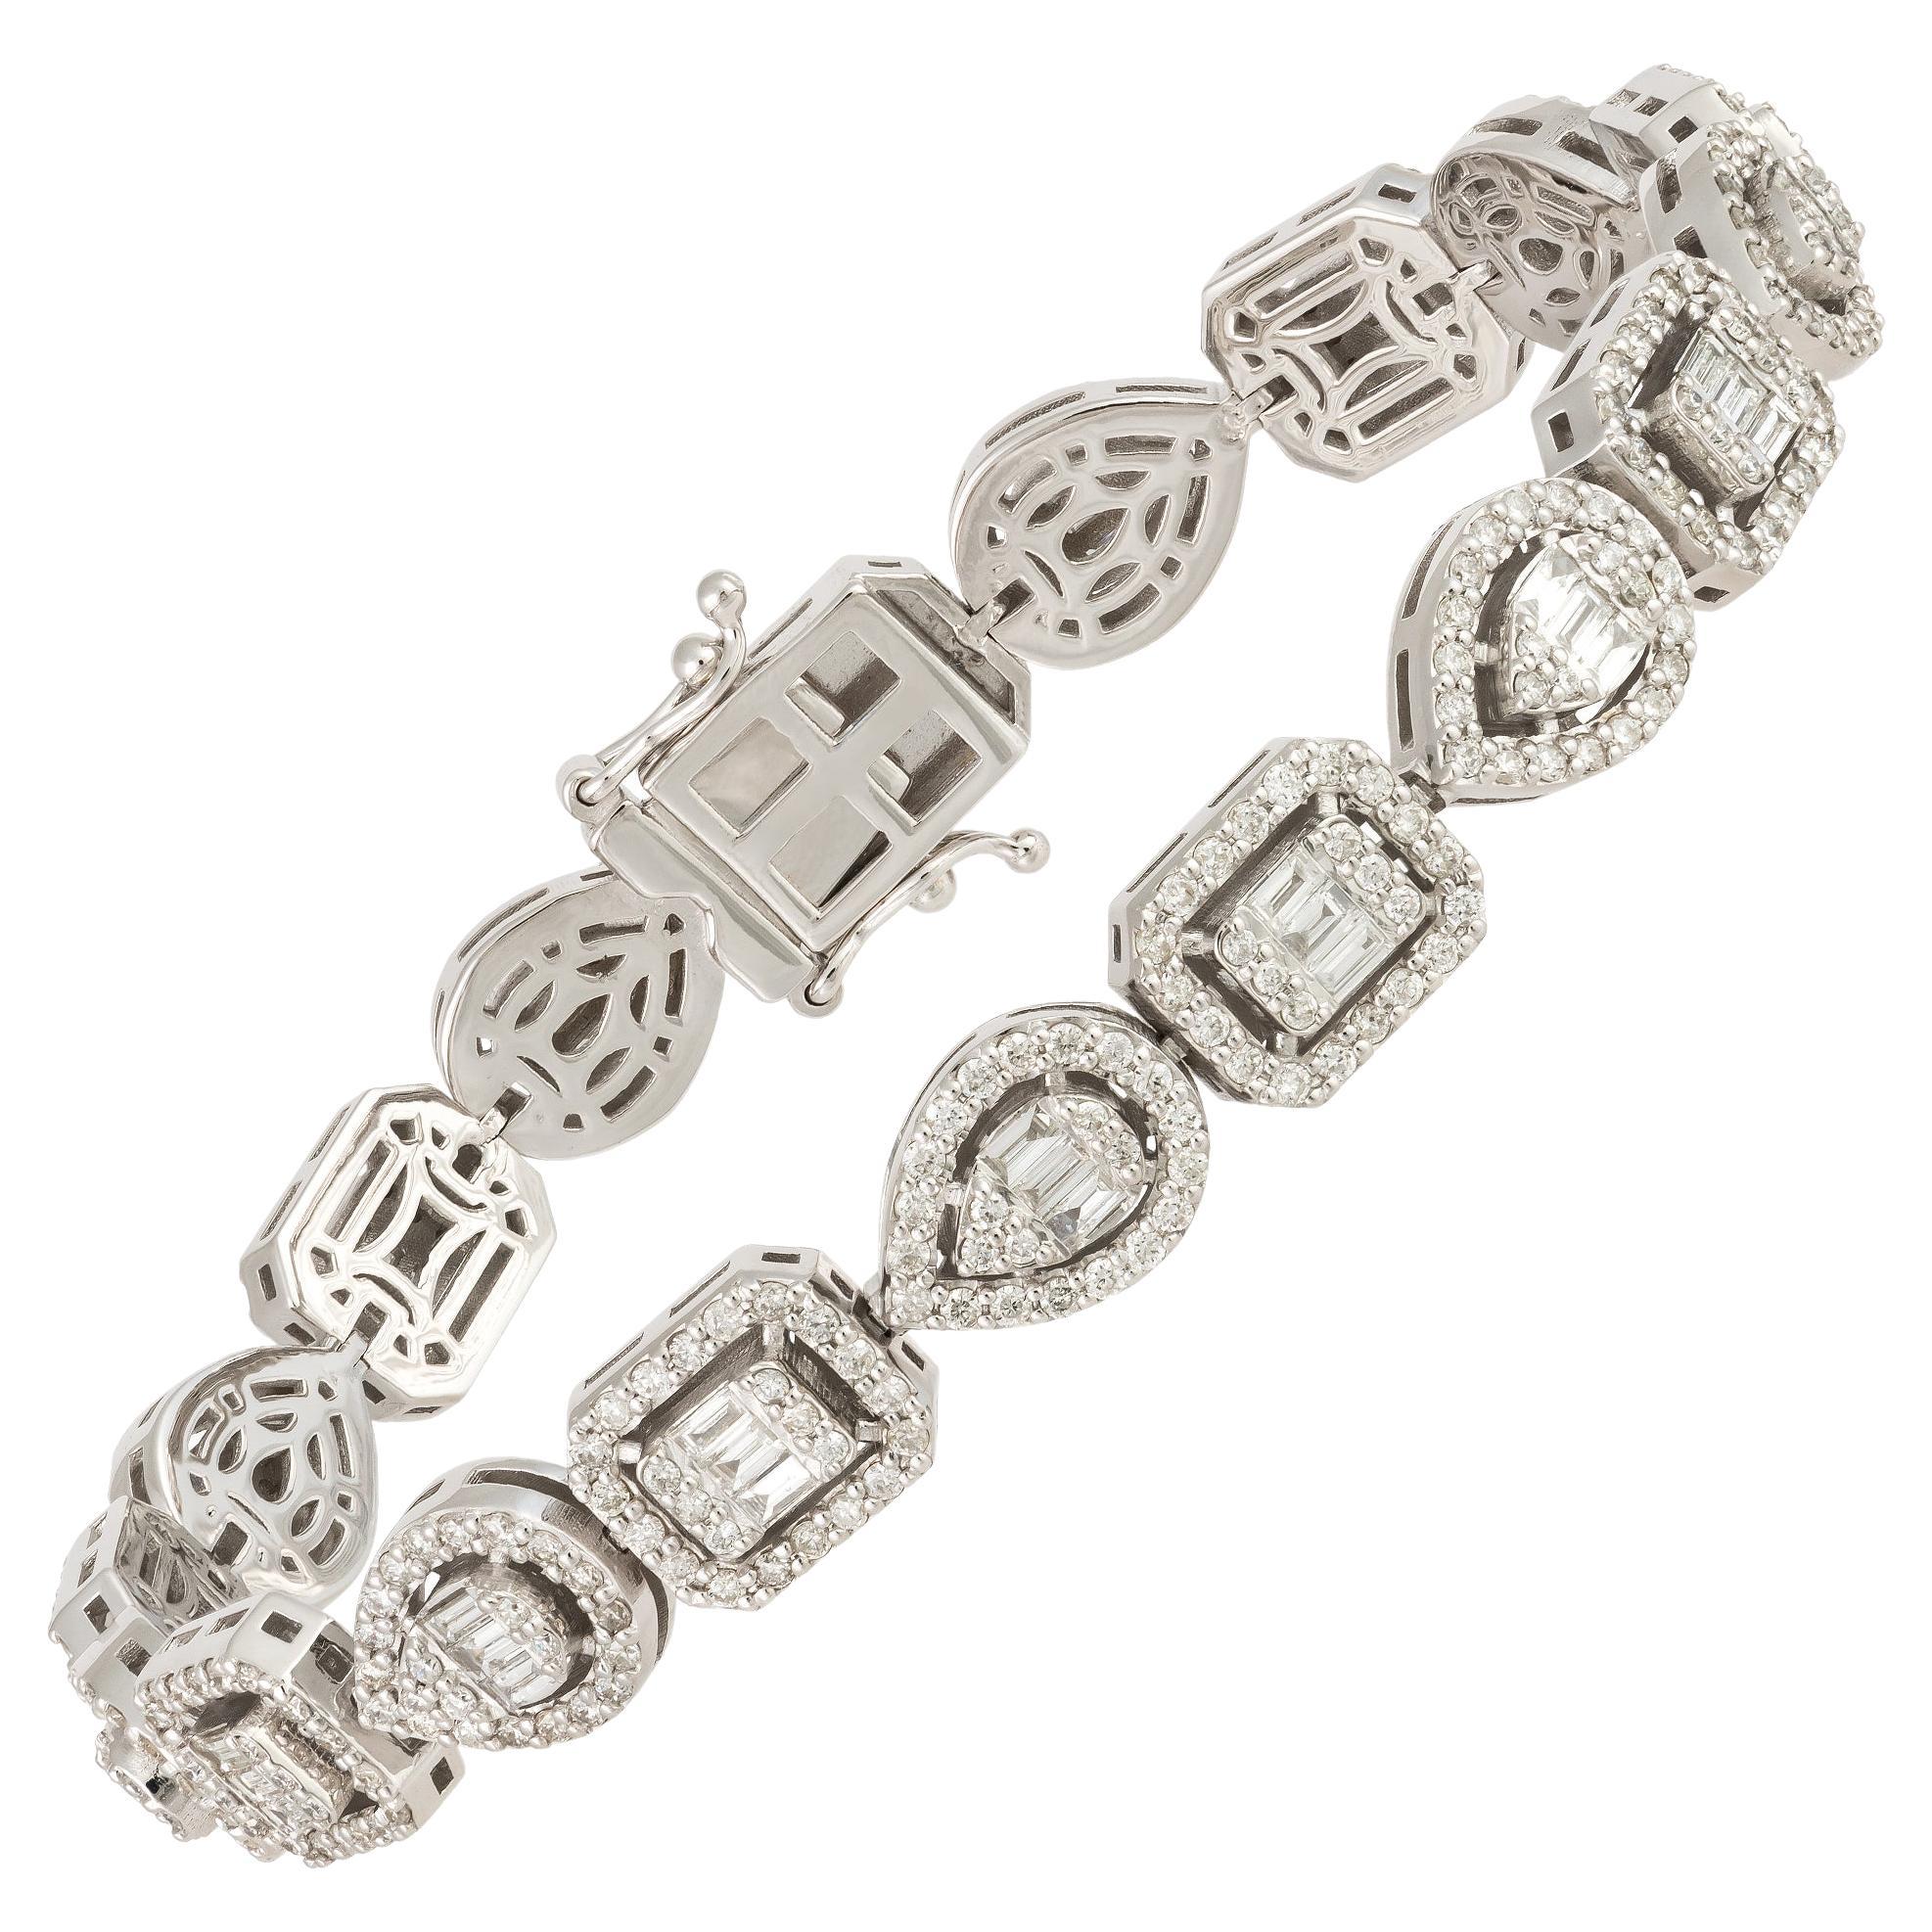 Grand et magnifique bracelet tennis rare en or 18 carats avec diamants de forme fantaisie, 26 400 $, Neuf avec étiquette